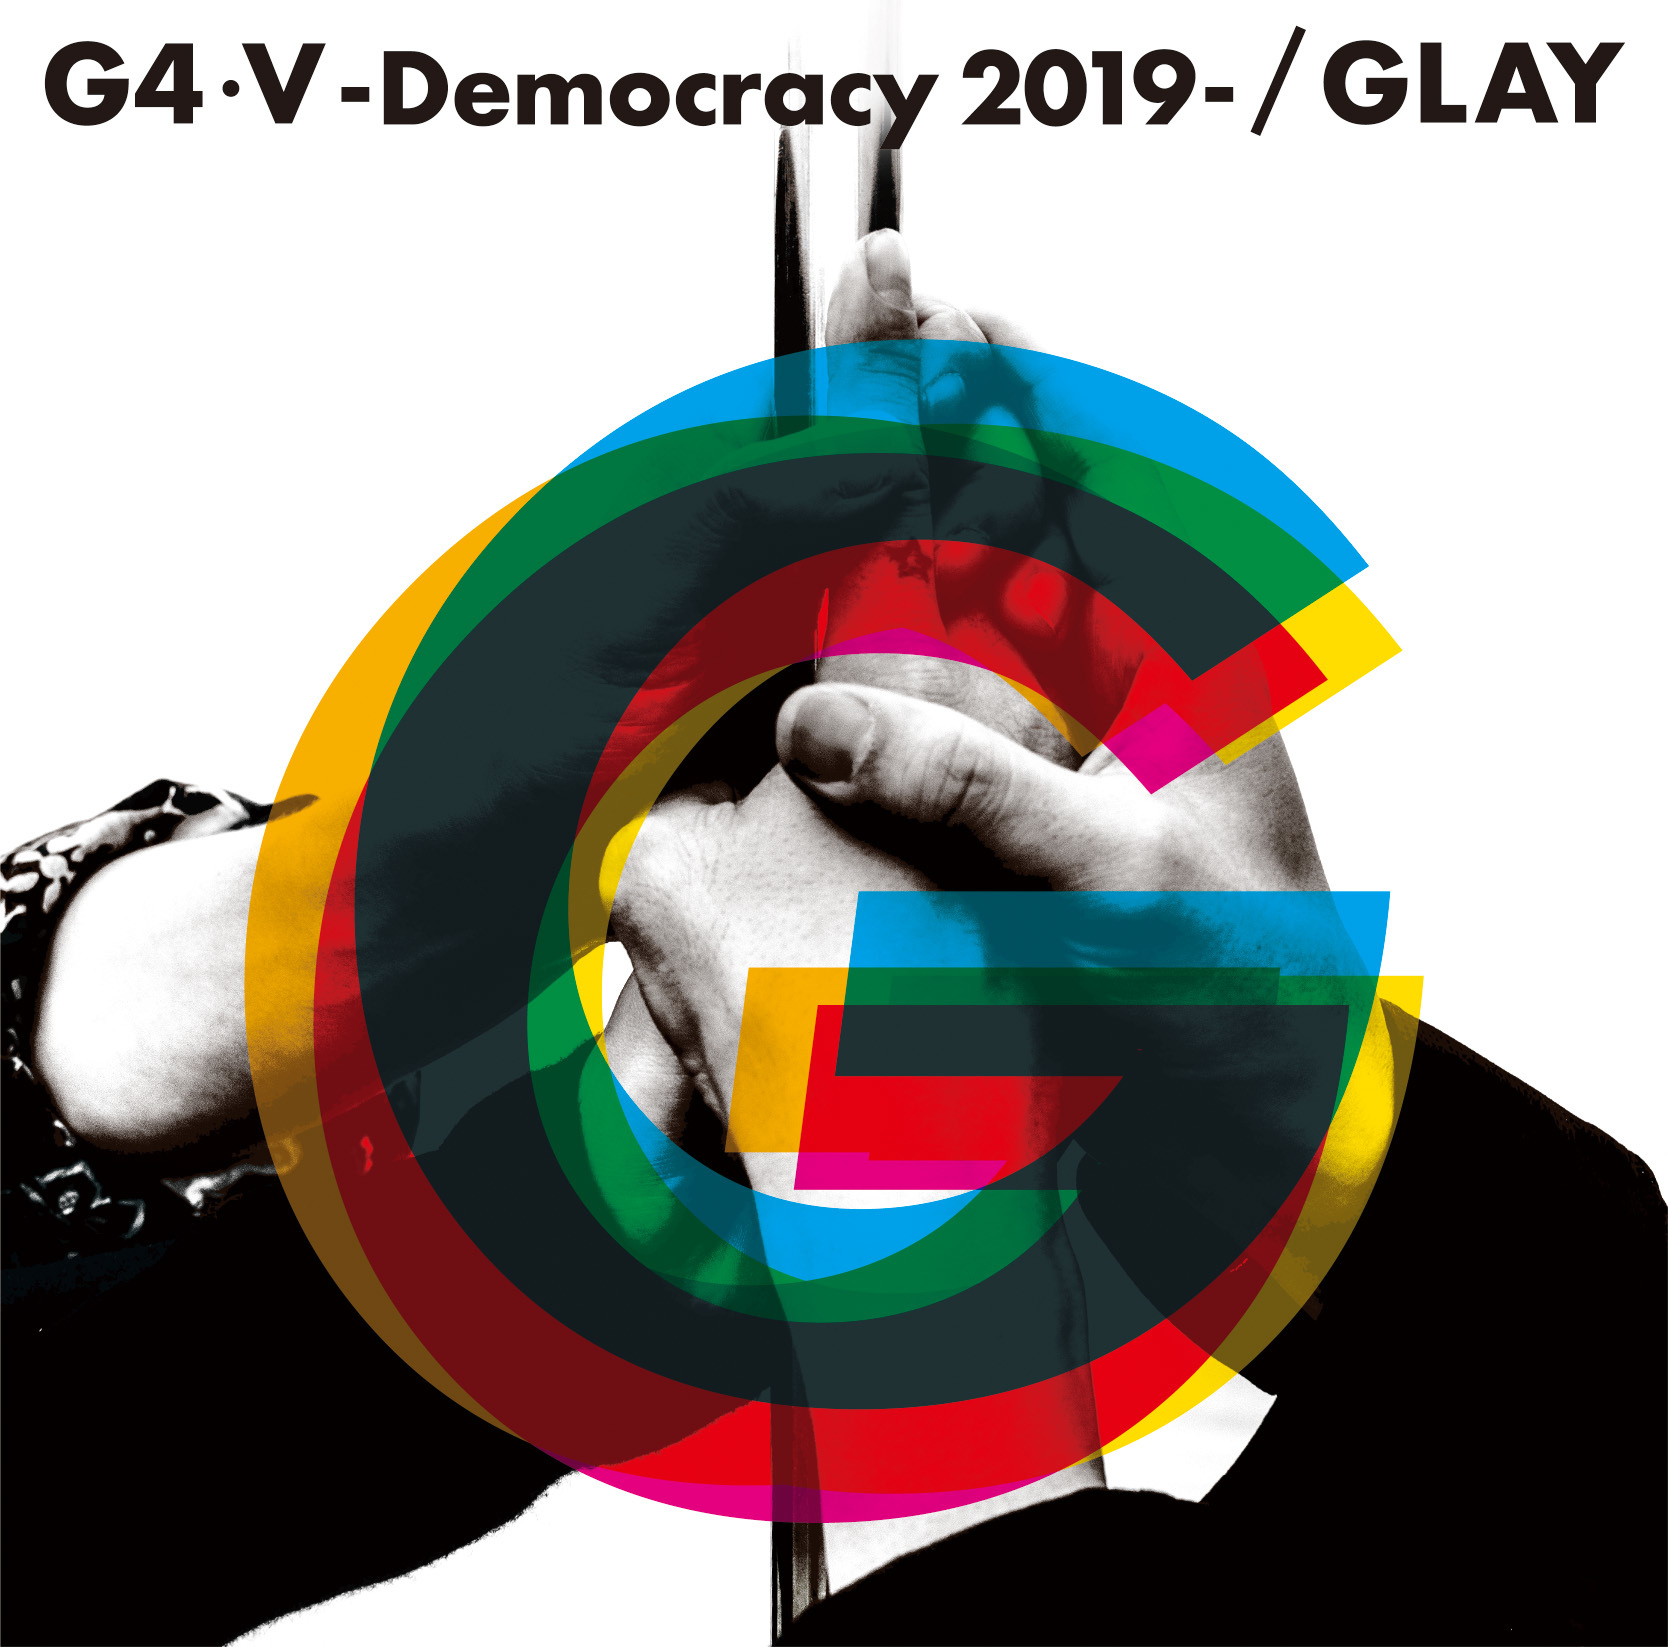 「G4・Ⅴ-Democracy 2019-」